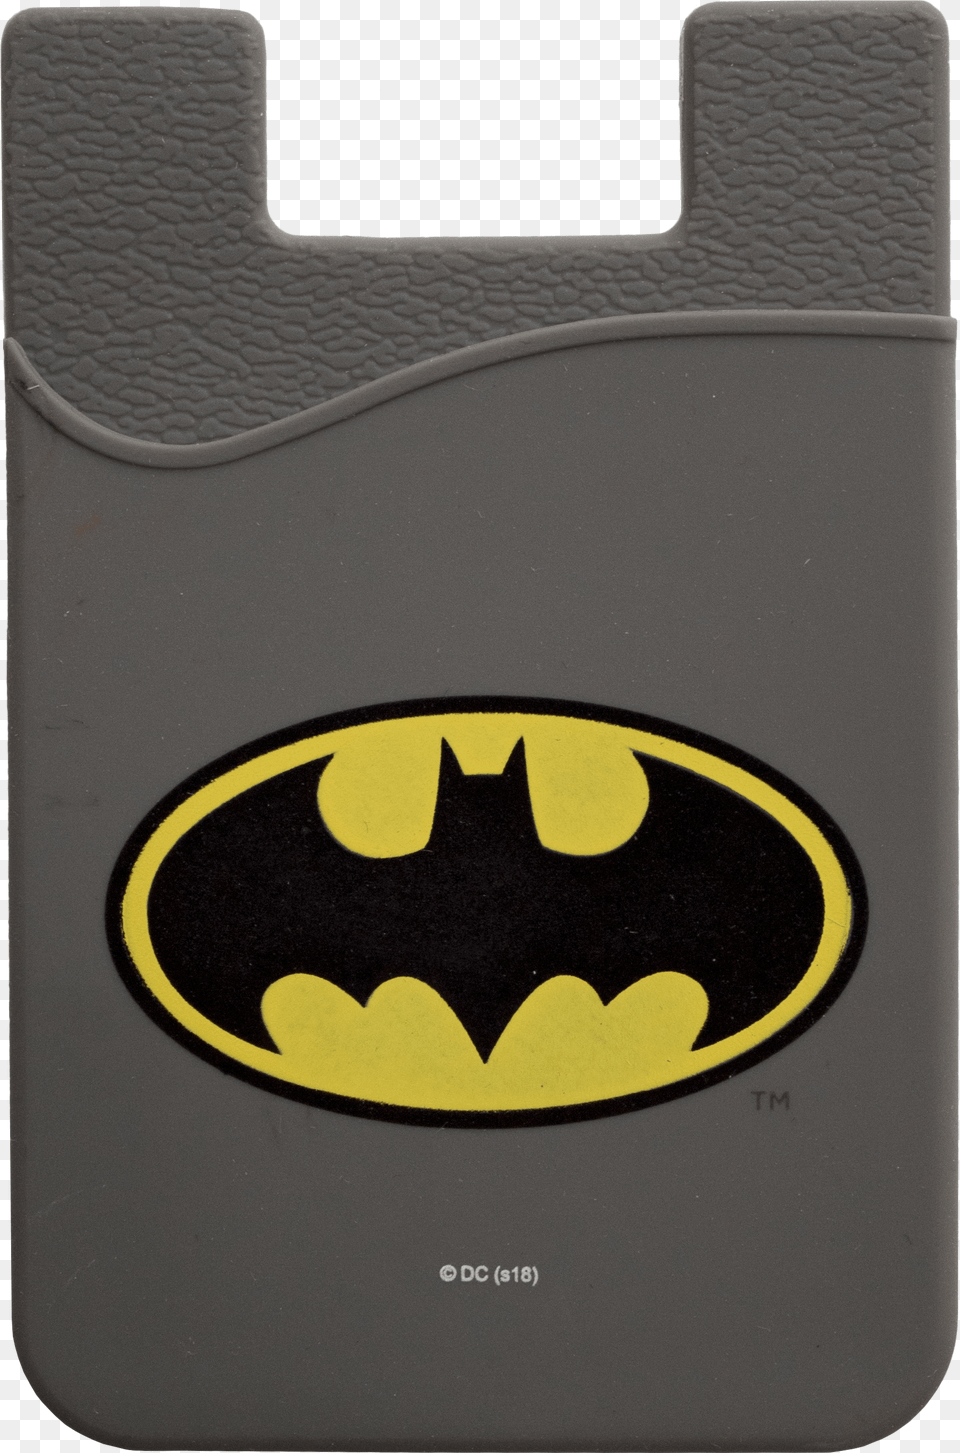 Ben Affleck Batman Png Image